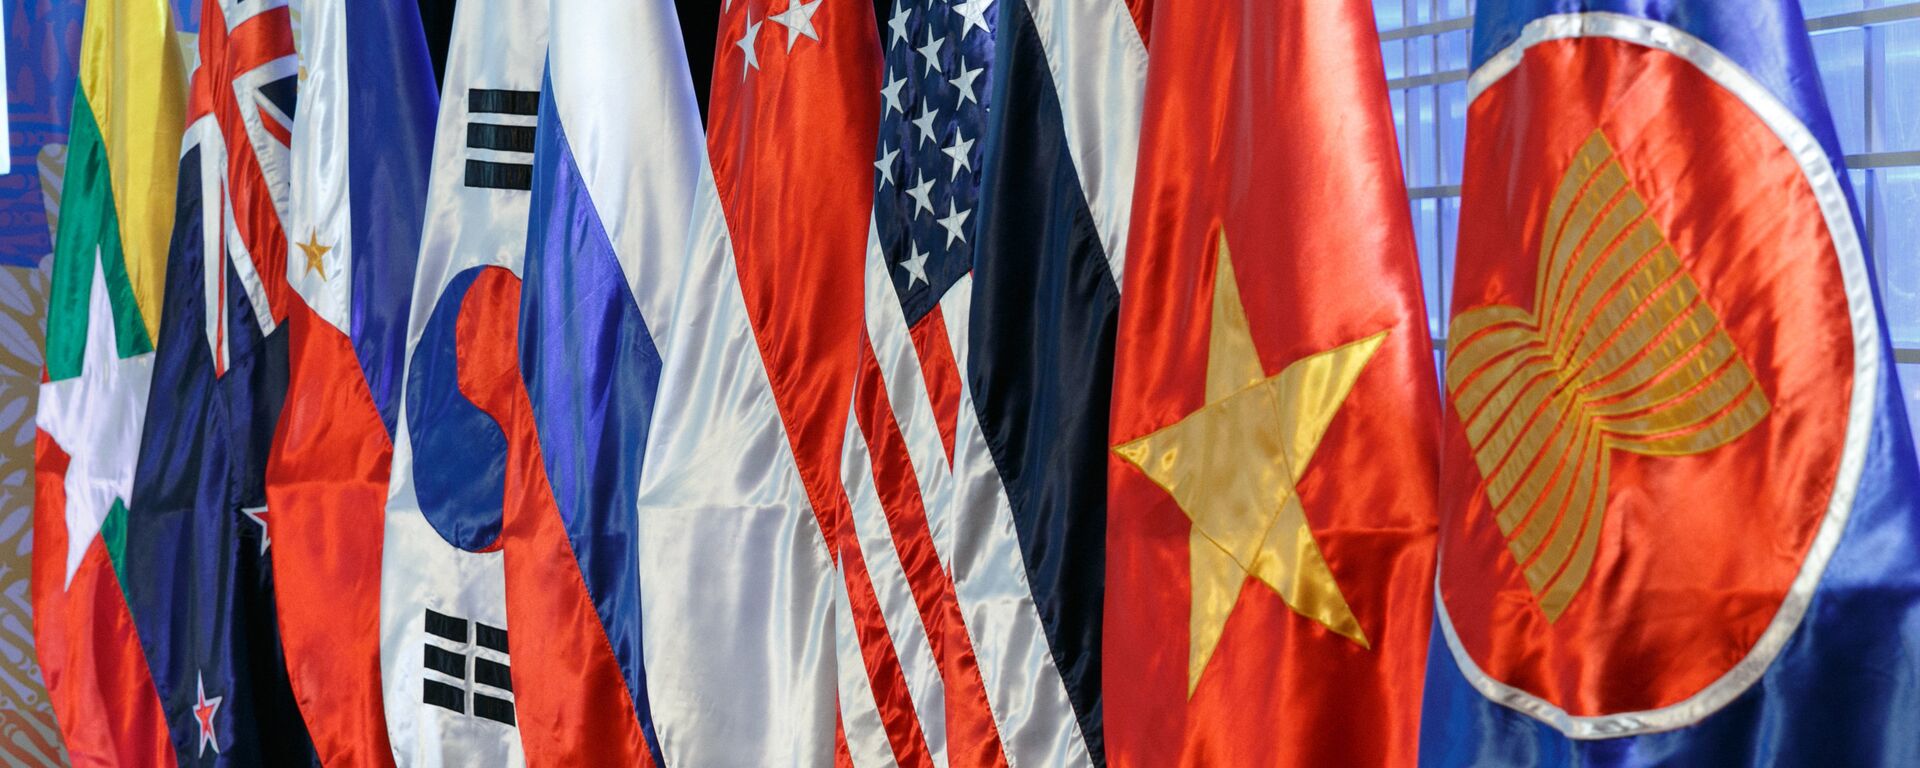 Las banderas de los países miembros de la ASEAN - Sputnik Mundo, 1920, 28.06.2021